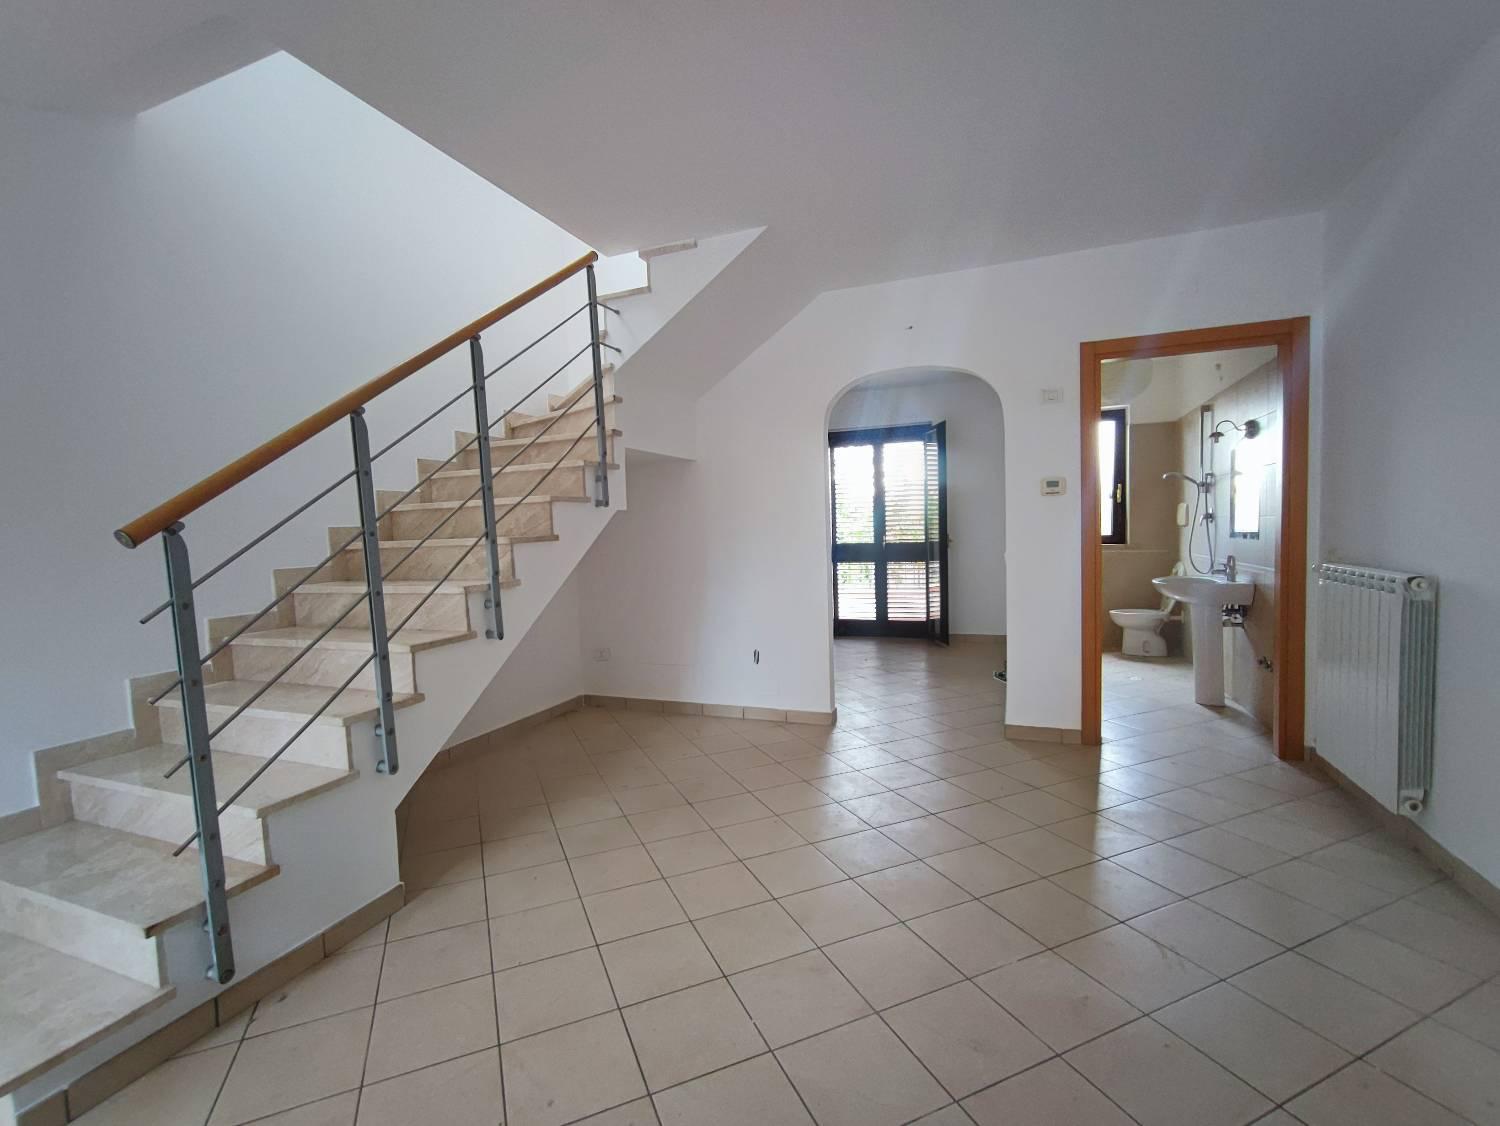 Villa Tri-Quadrifamiliare in vendita a Silvi, 5 locali, prezzo € 209.000 | PortaleAgenzieImmobiliari.it